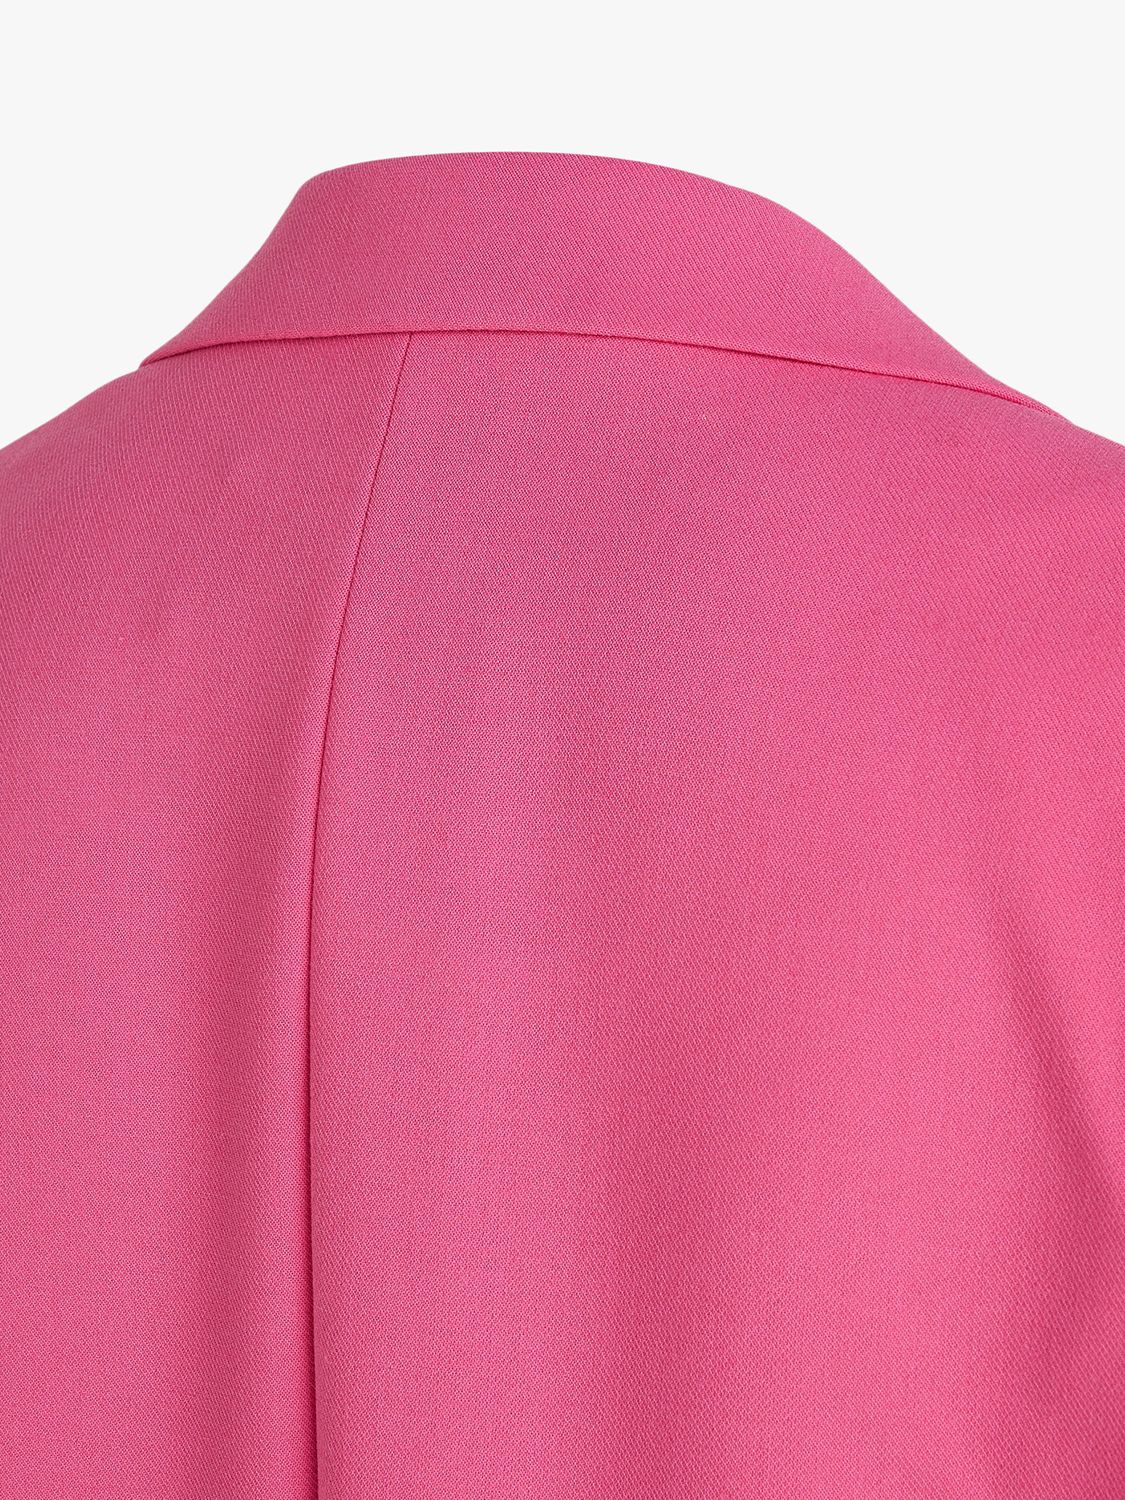 KARL LAGERFELD Suit Blazer, Cabaret Pink at John Lewis & Partners